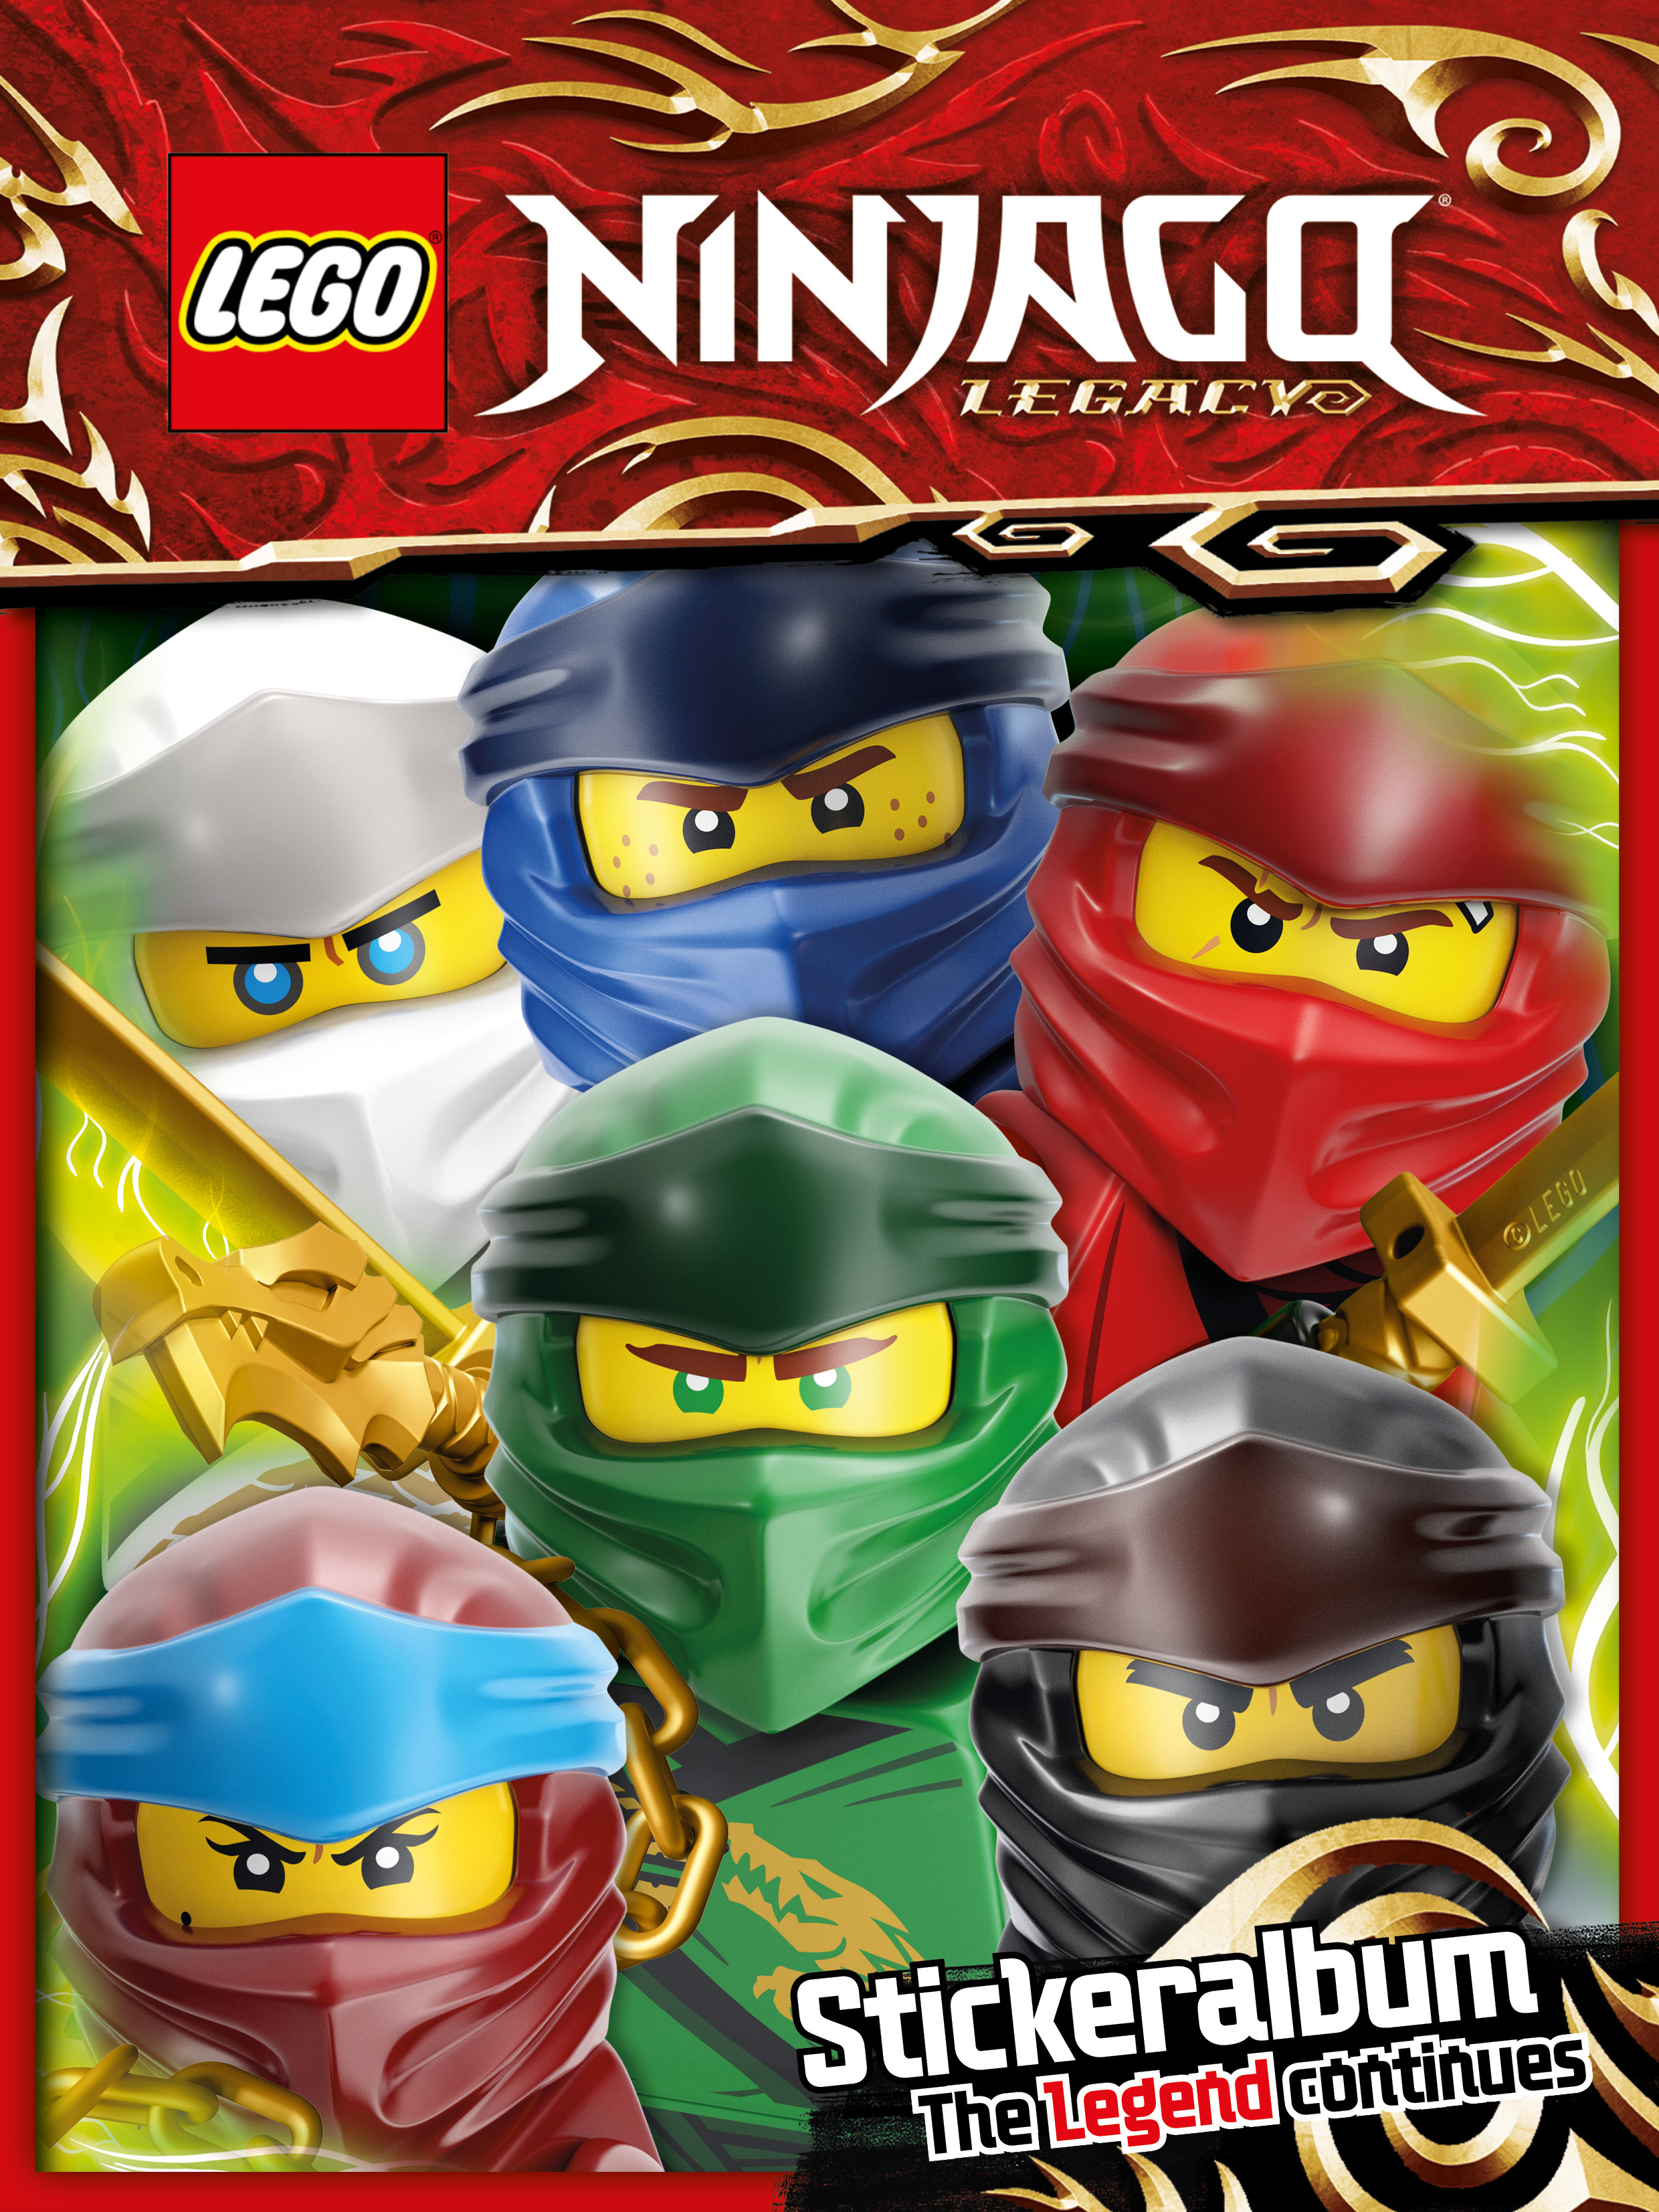 10 Lego Ninjago Legacy Sticker 5 100 50 200 aussuchen aus allen NEU 20